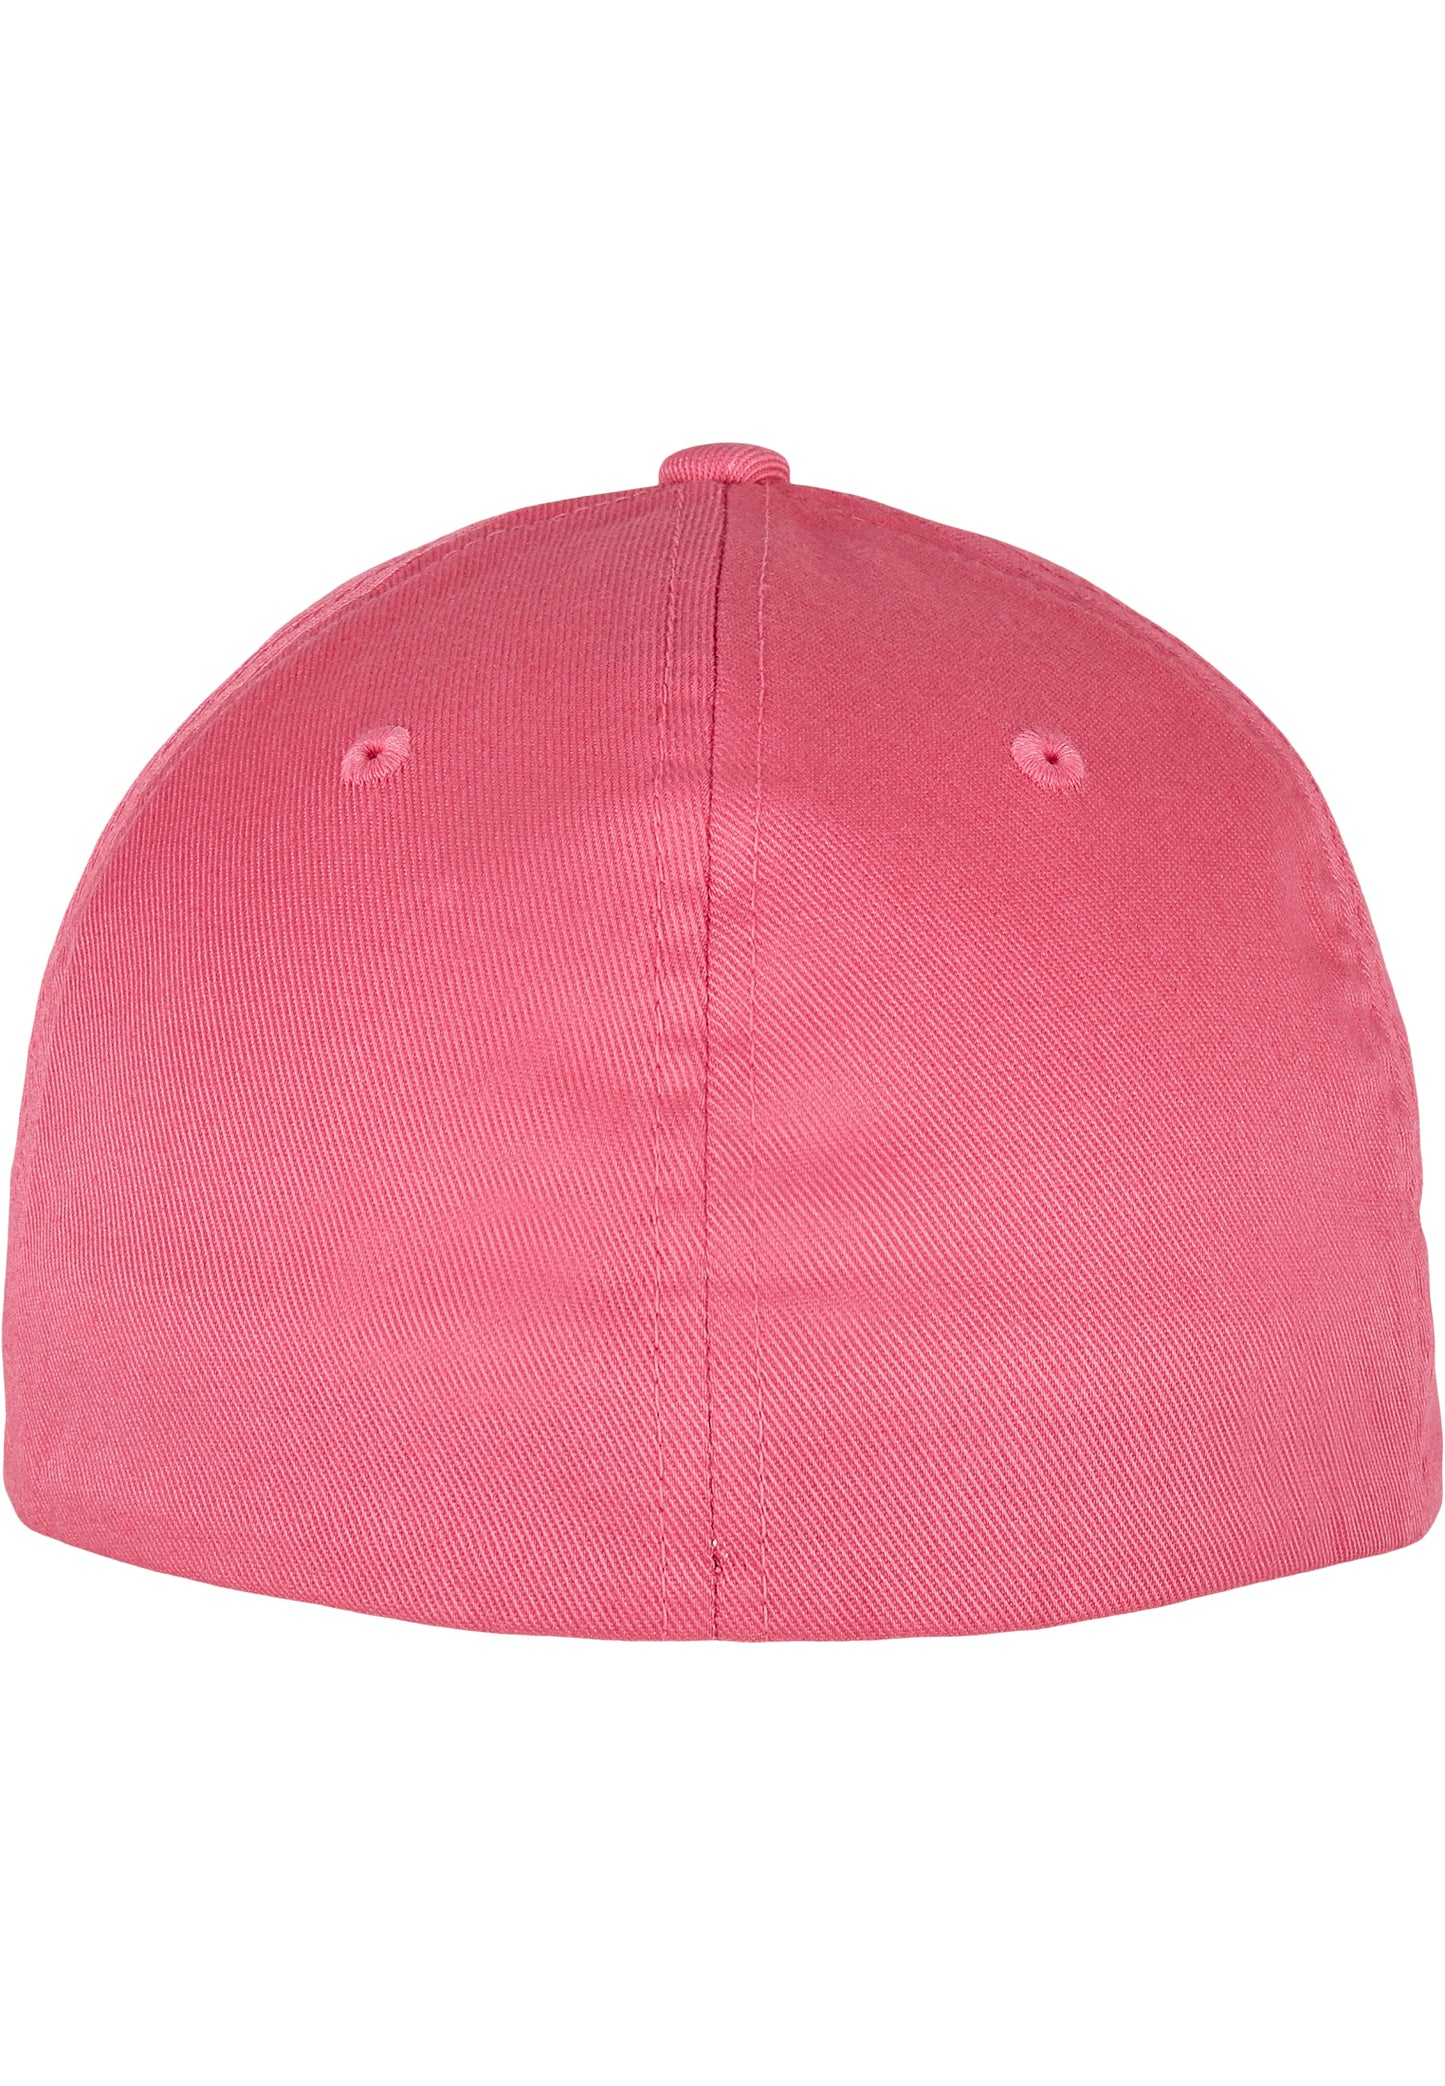 Flexfit Cap - Dark Pink - Headz Up 